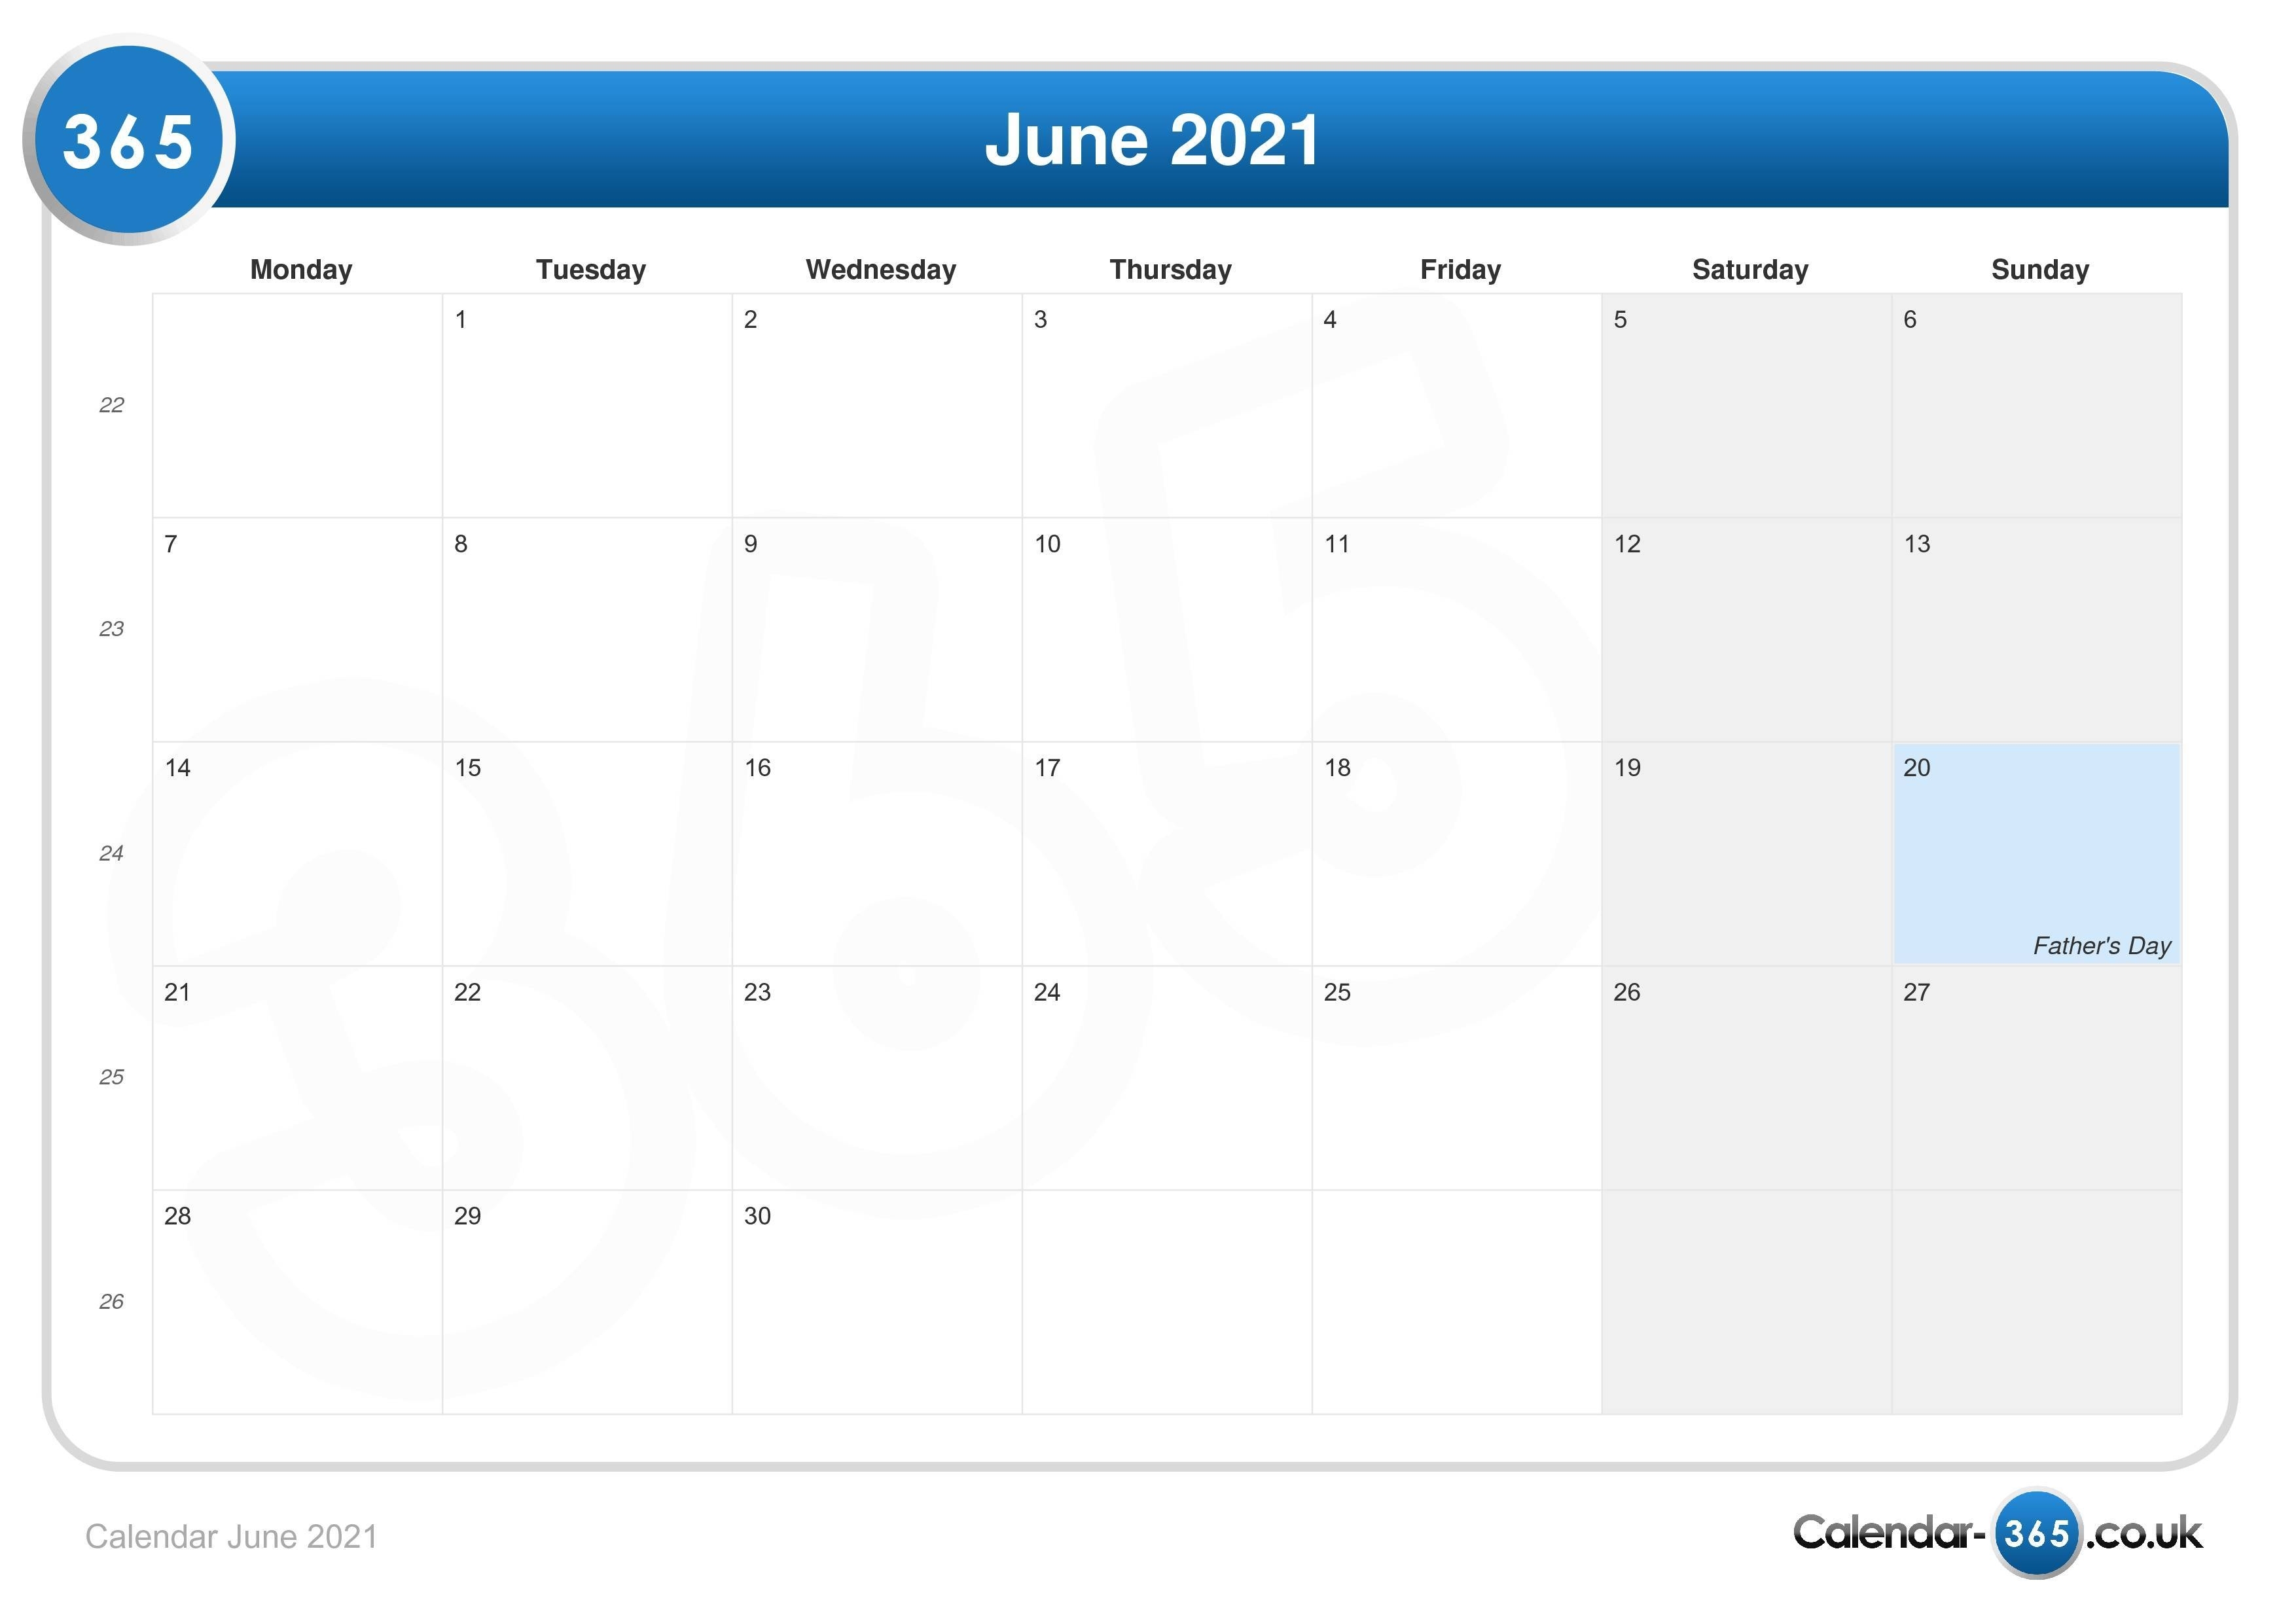 Calendar June 2021 Www.wiki-Calendar.com June 2021